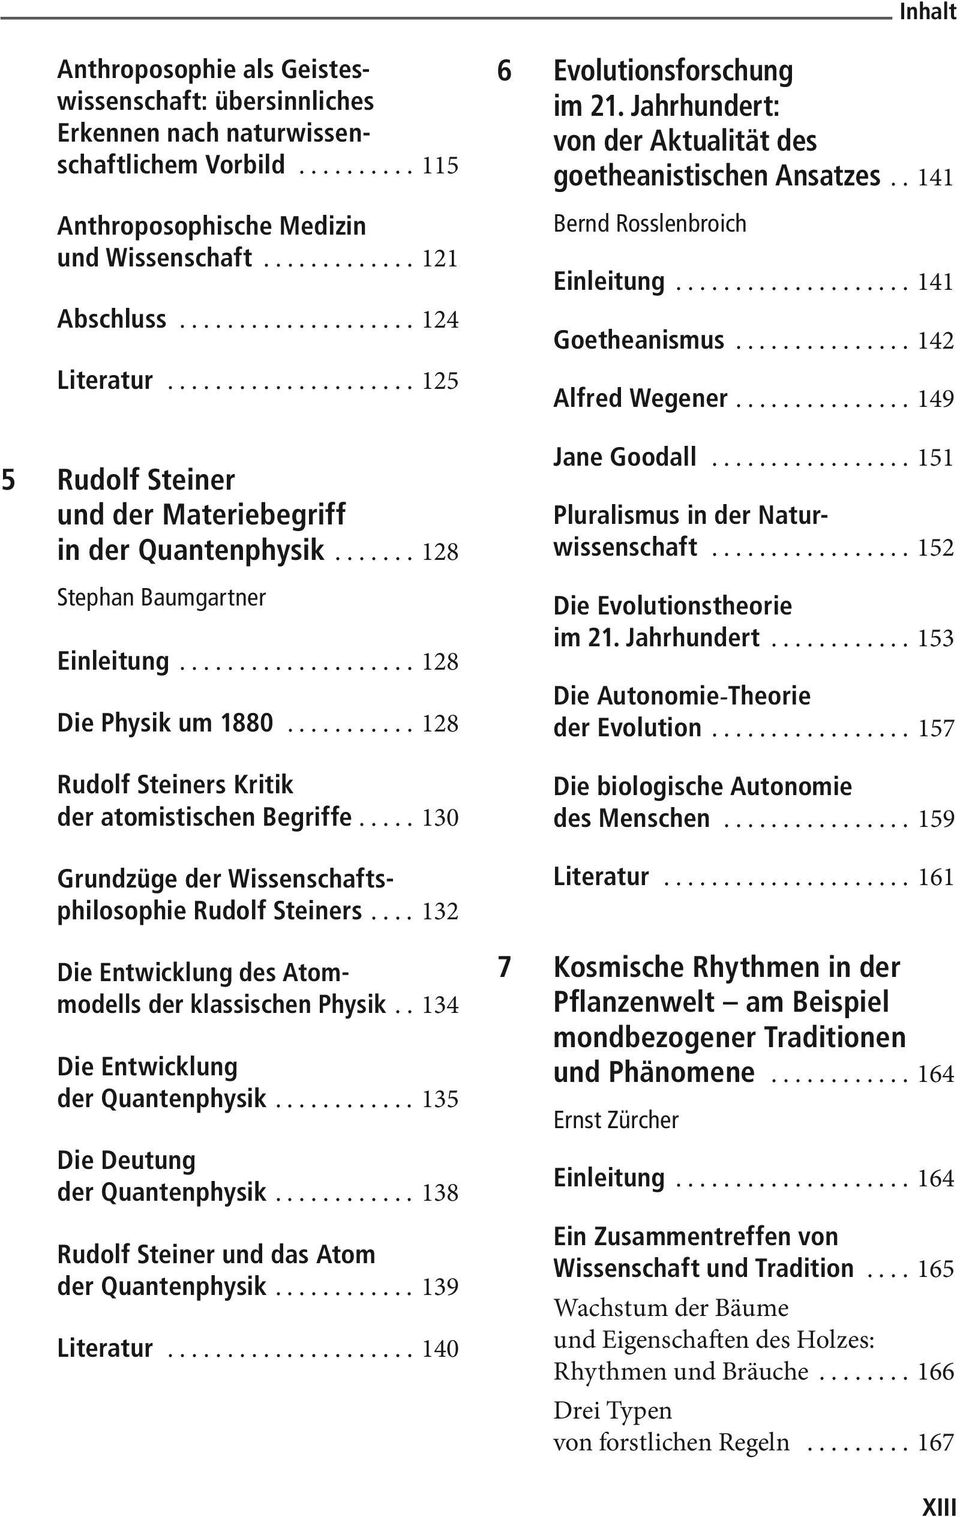 .. 130 Grundzüge der Wissenschaftsphilosophie Rudolf Steiners... 132 Die Entwicklung des Atommodells der klassischen Physik.. 134 Die Entwicklung der Quantenphysik... 135 Die Deutung der Quantenphysik.